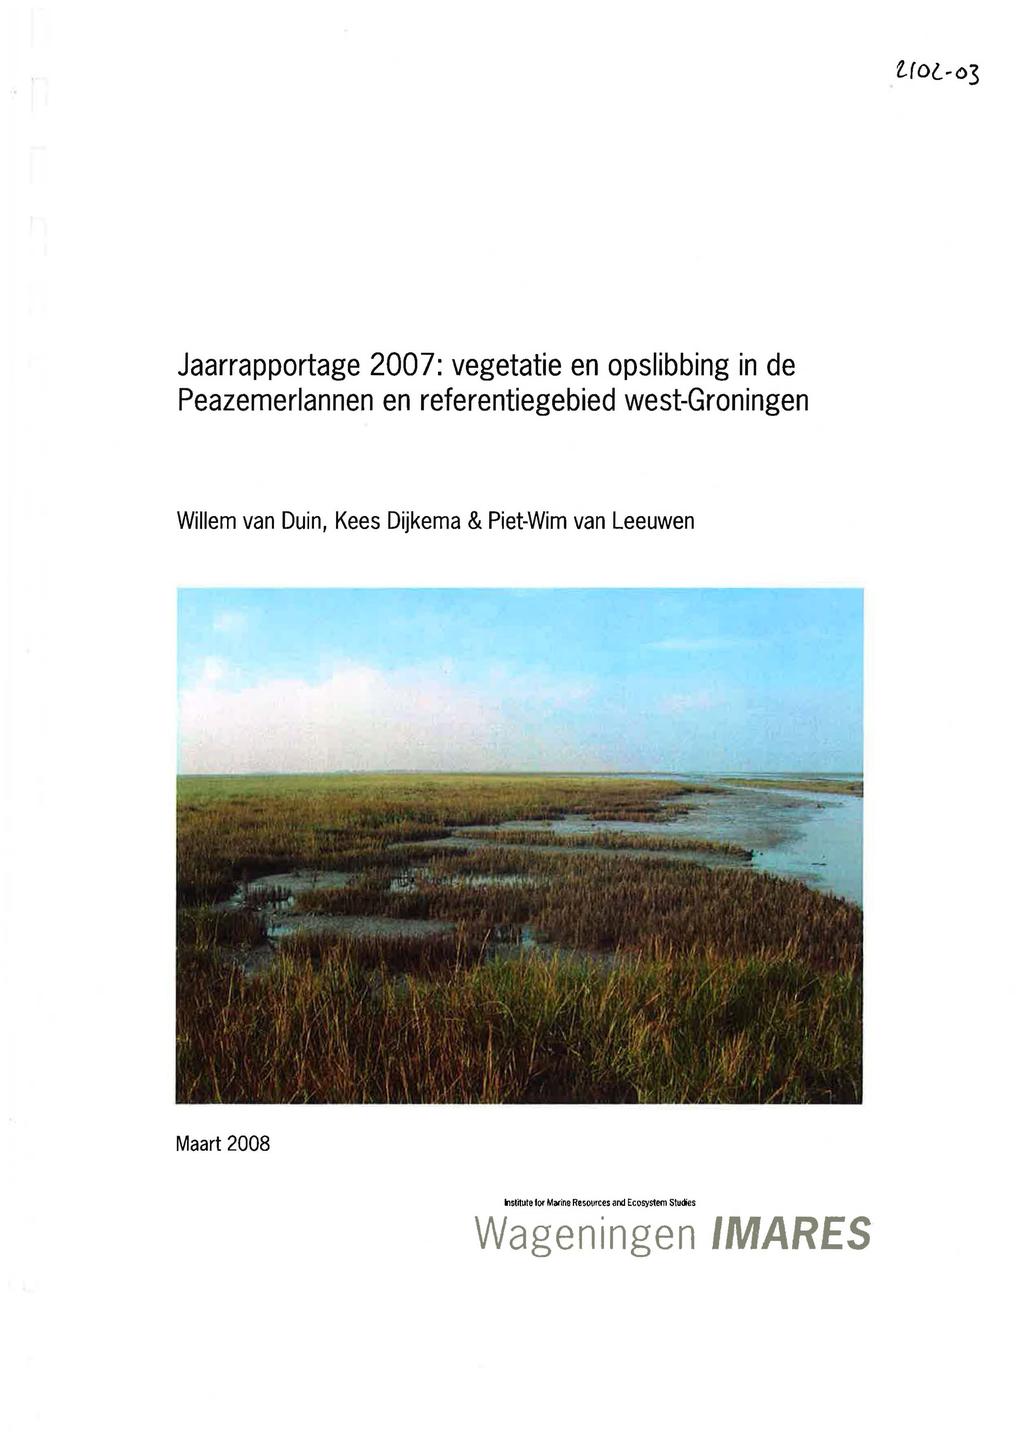 Jaarrapportage 07: vegetatie en opslibbing in de Peazemerlannen en referentiegebied west-groningen Willem van